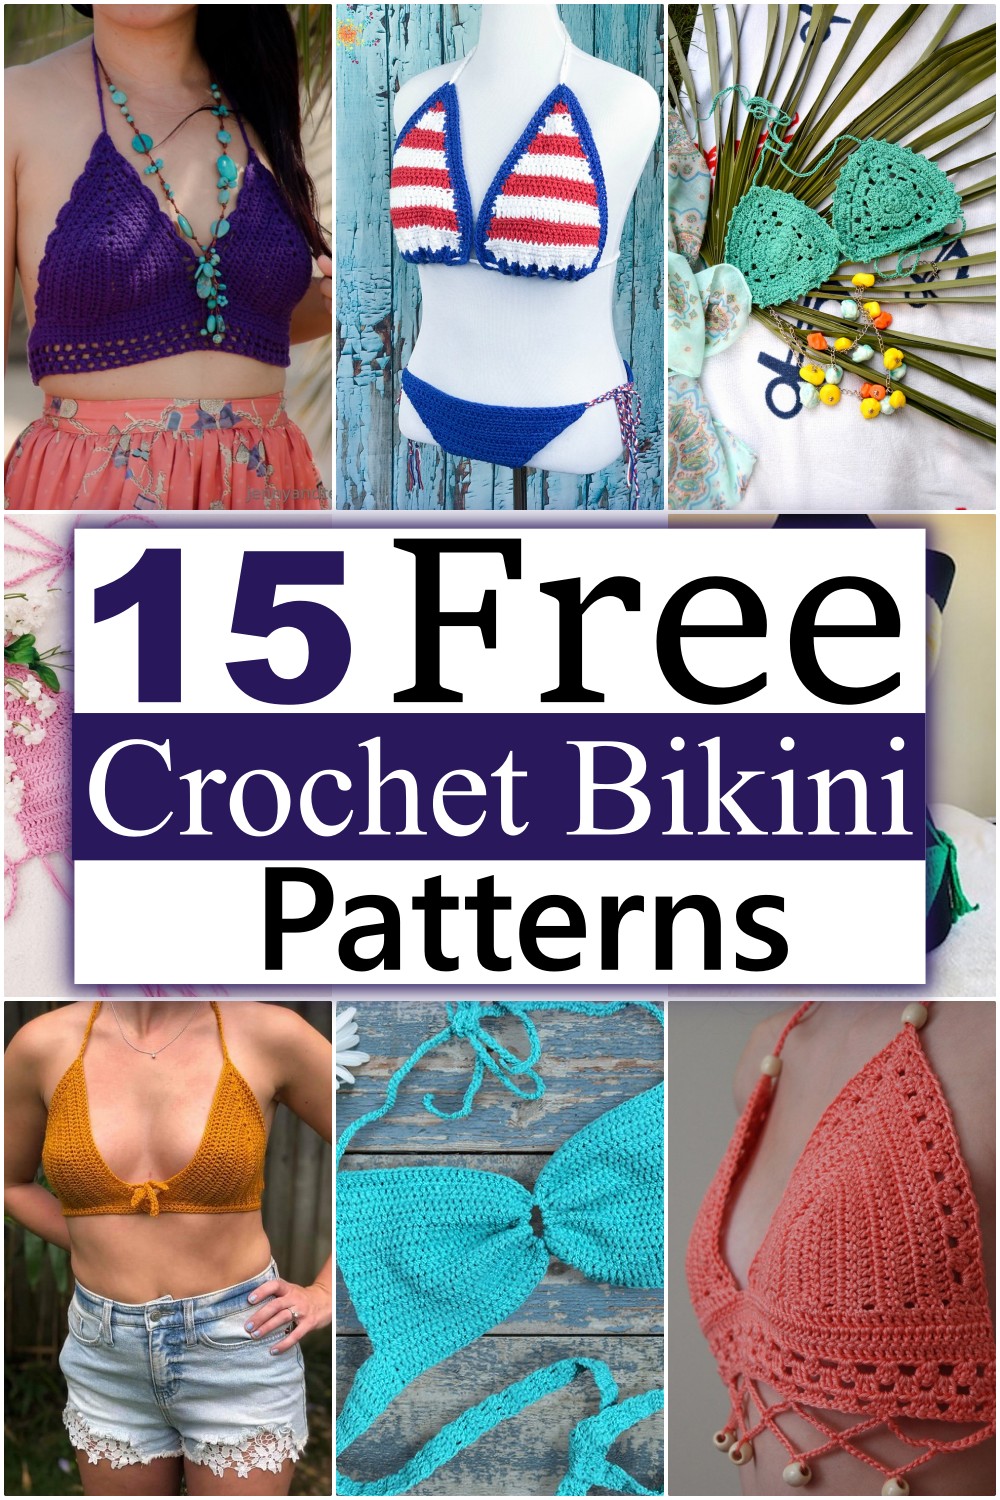 Crochet Bikini Patterns